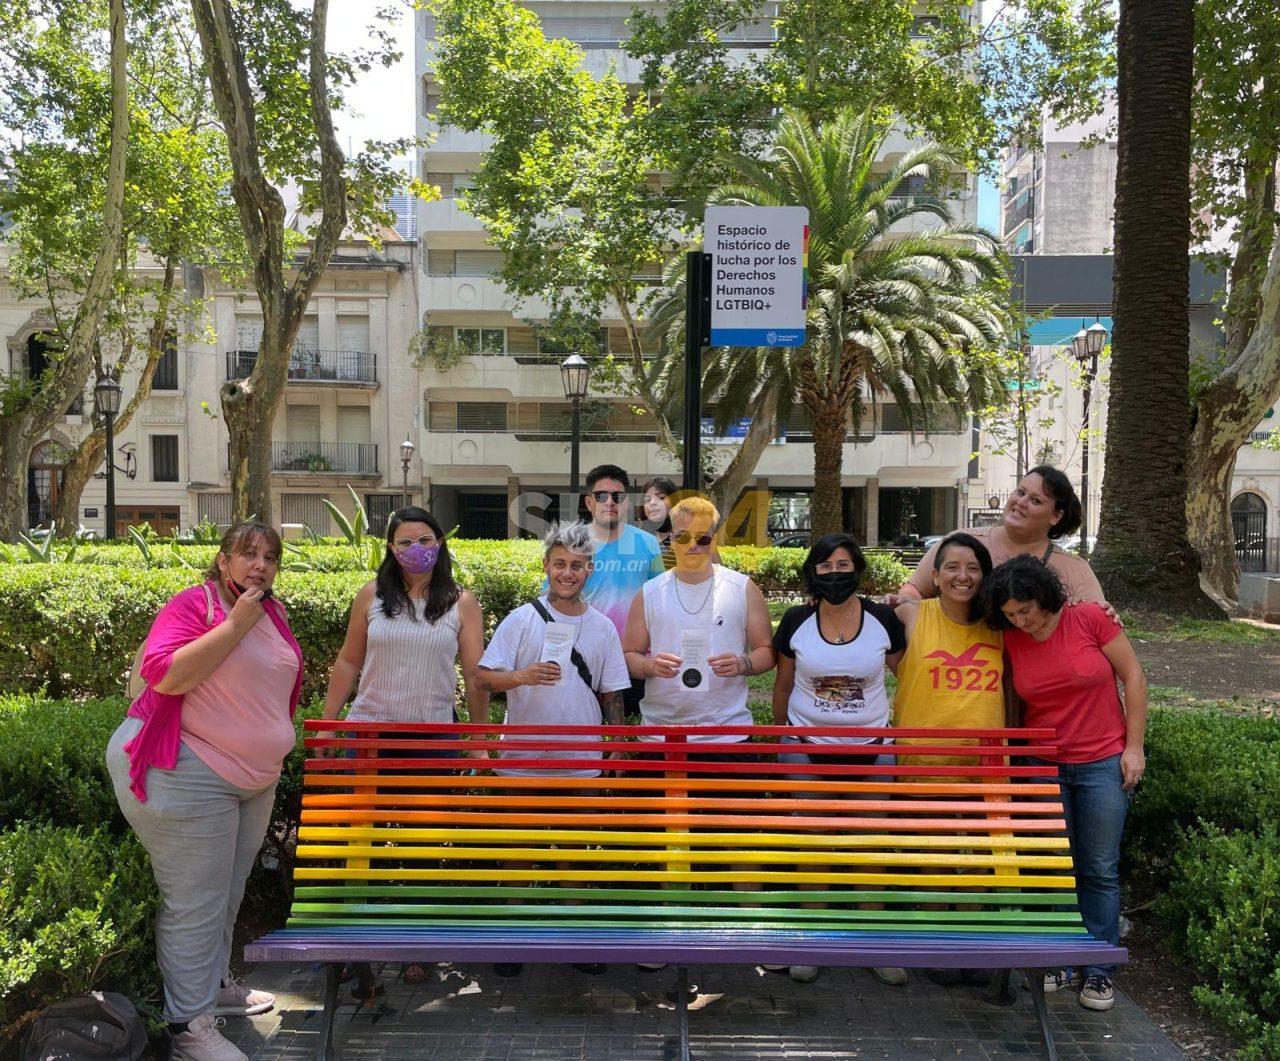 Tras el caso Lucio Dupuy, activistas de Rosario organizan actividades culturales contra la lesbofobia